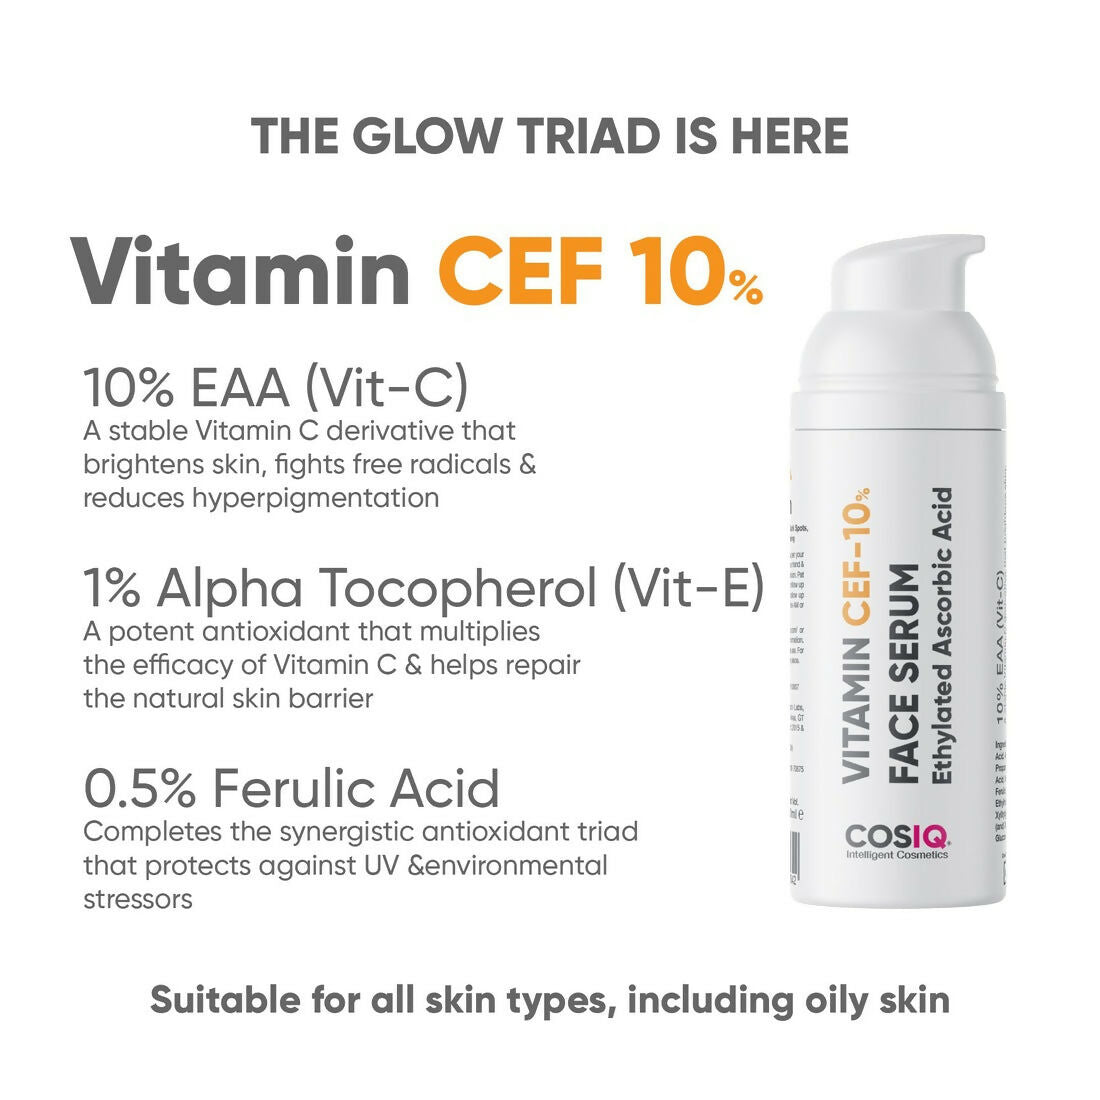 Cos-IQ Vitamin CEF-10% Face Serum - Distacart